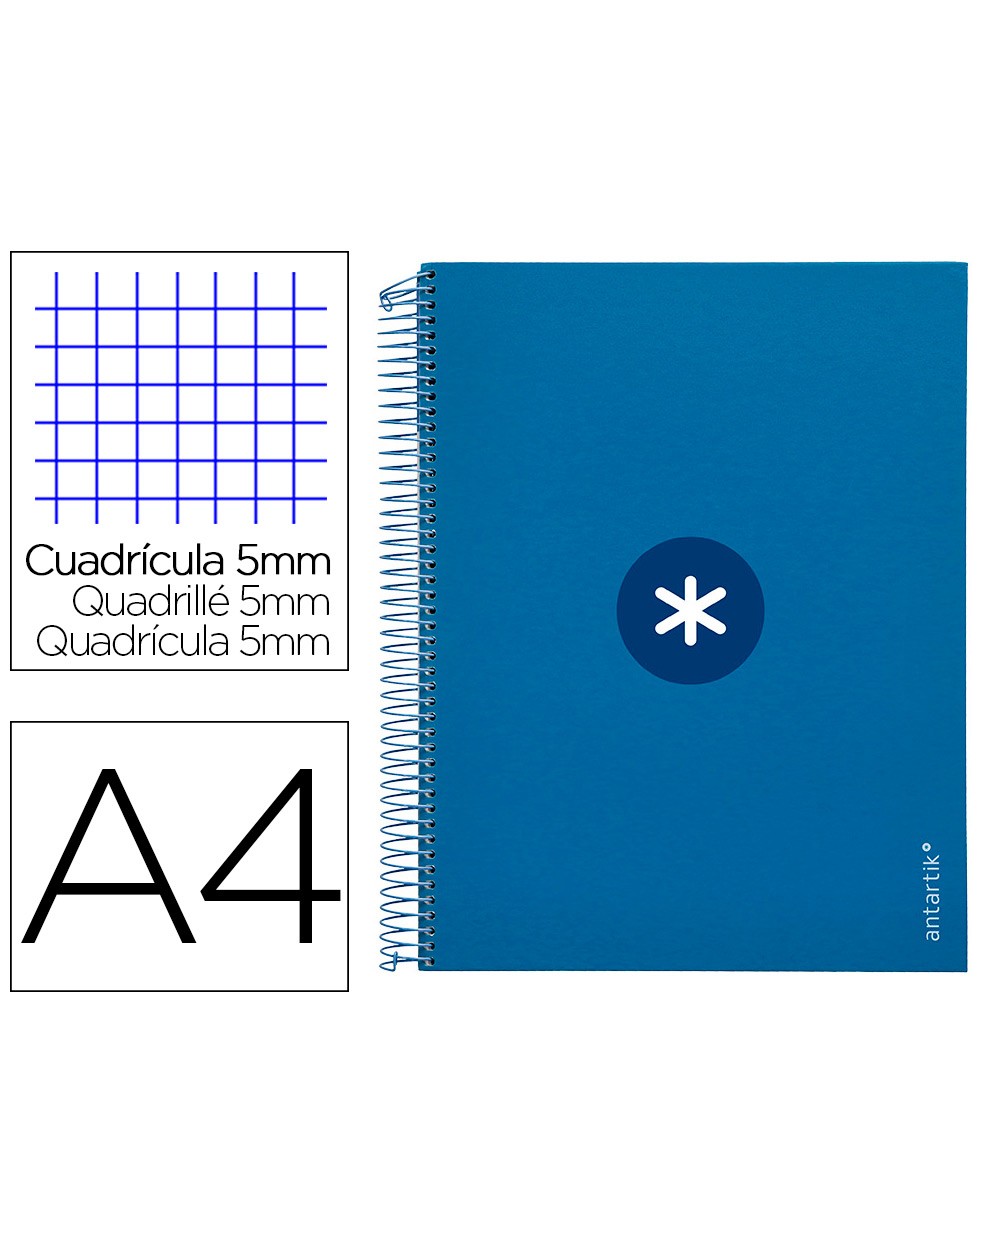 Cuaderno espiral liderpapel a4 micro antartik tapa forrada120h 100 gr cuadro 5mm 5 banda4 taladros color azul marino